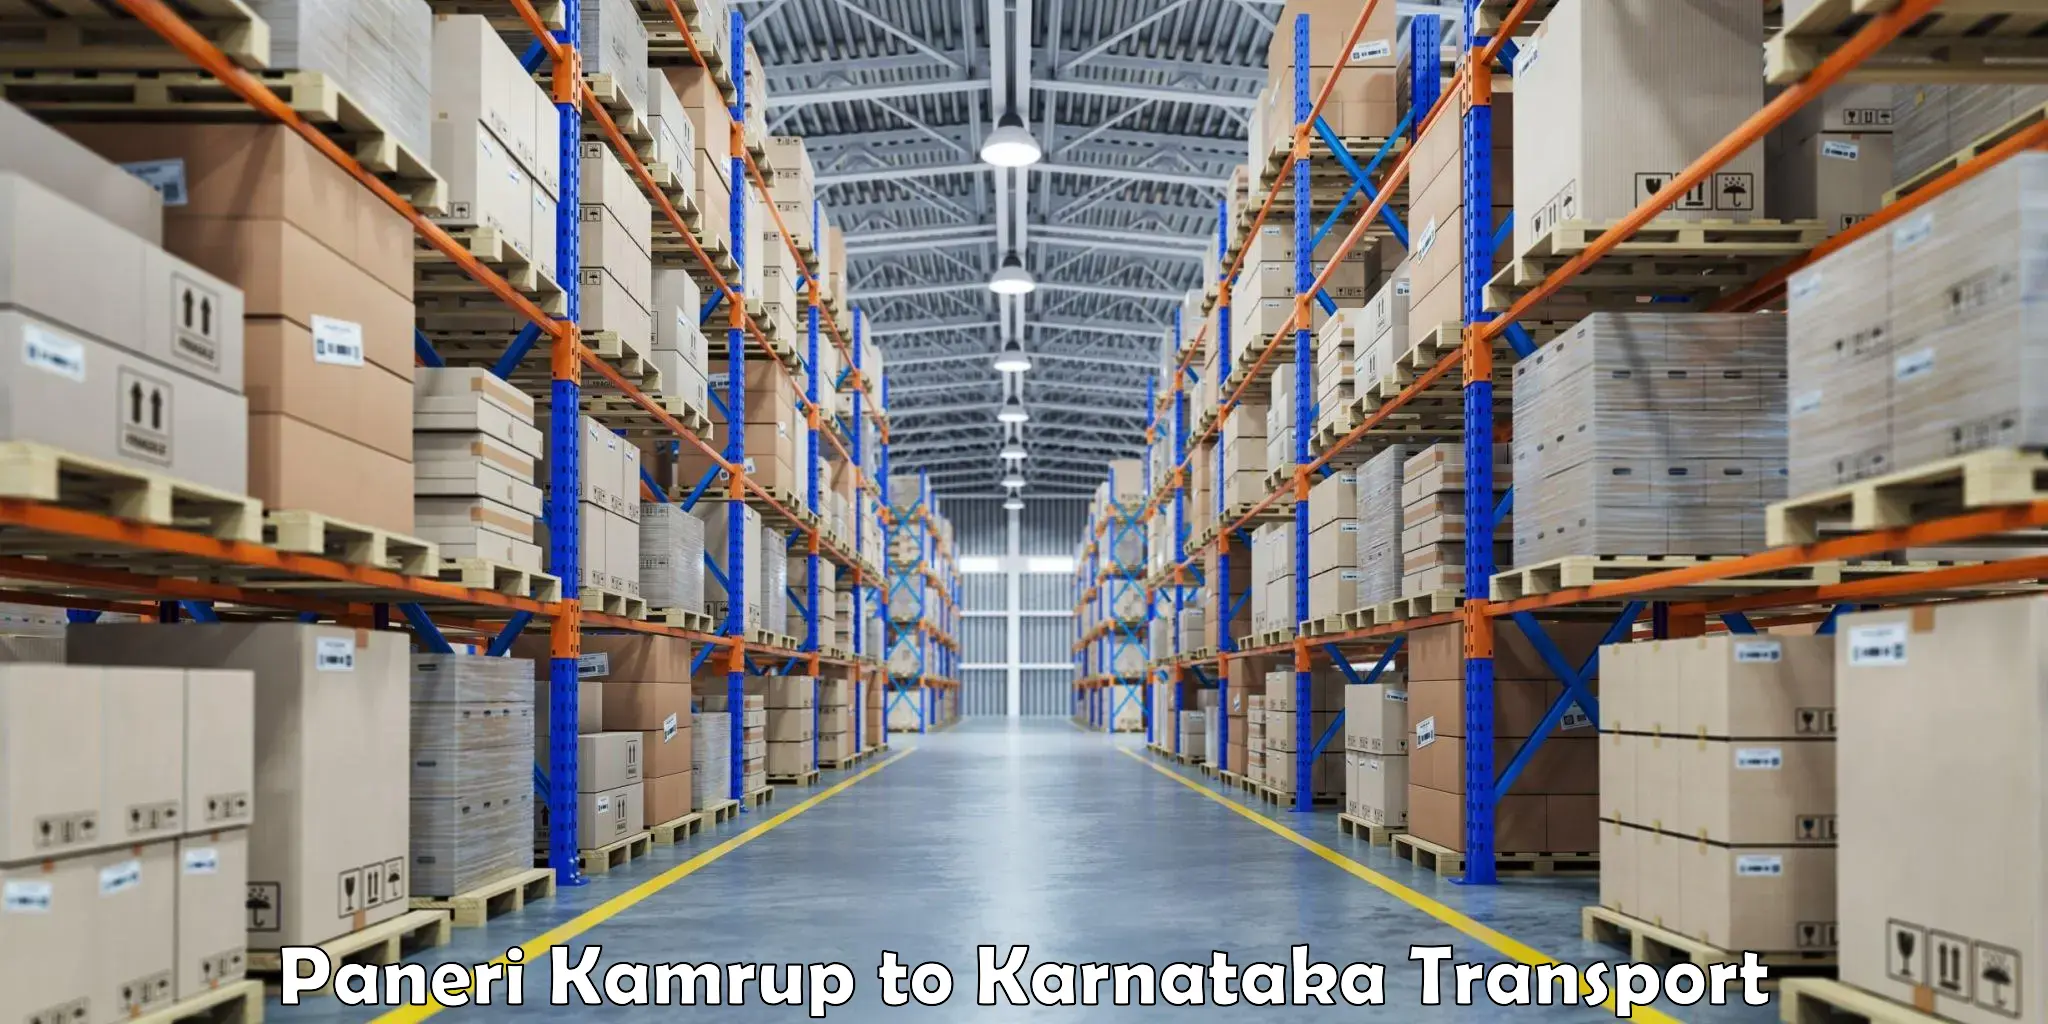 Road transport online services Paneri Kamrup to Huliyar